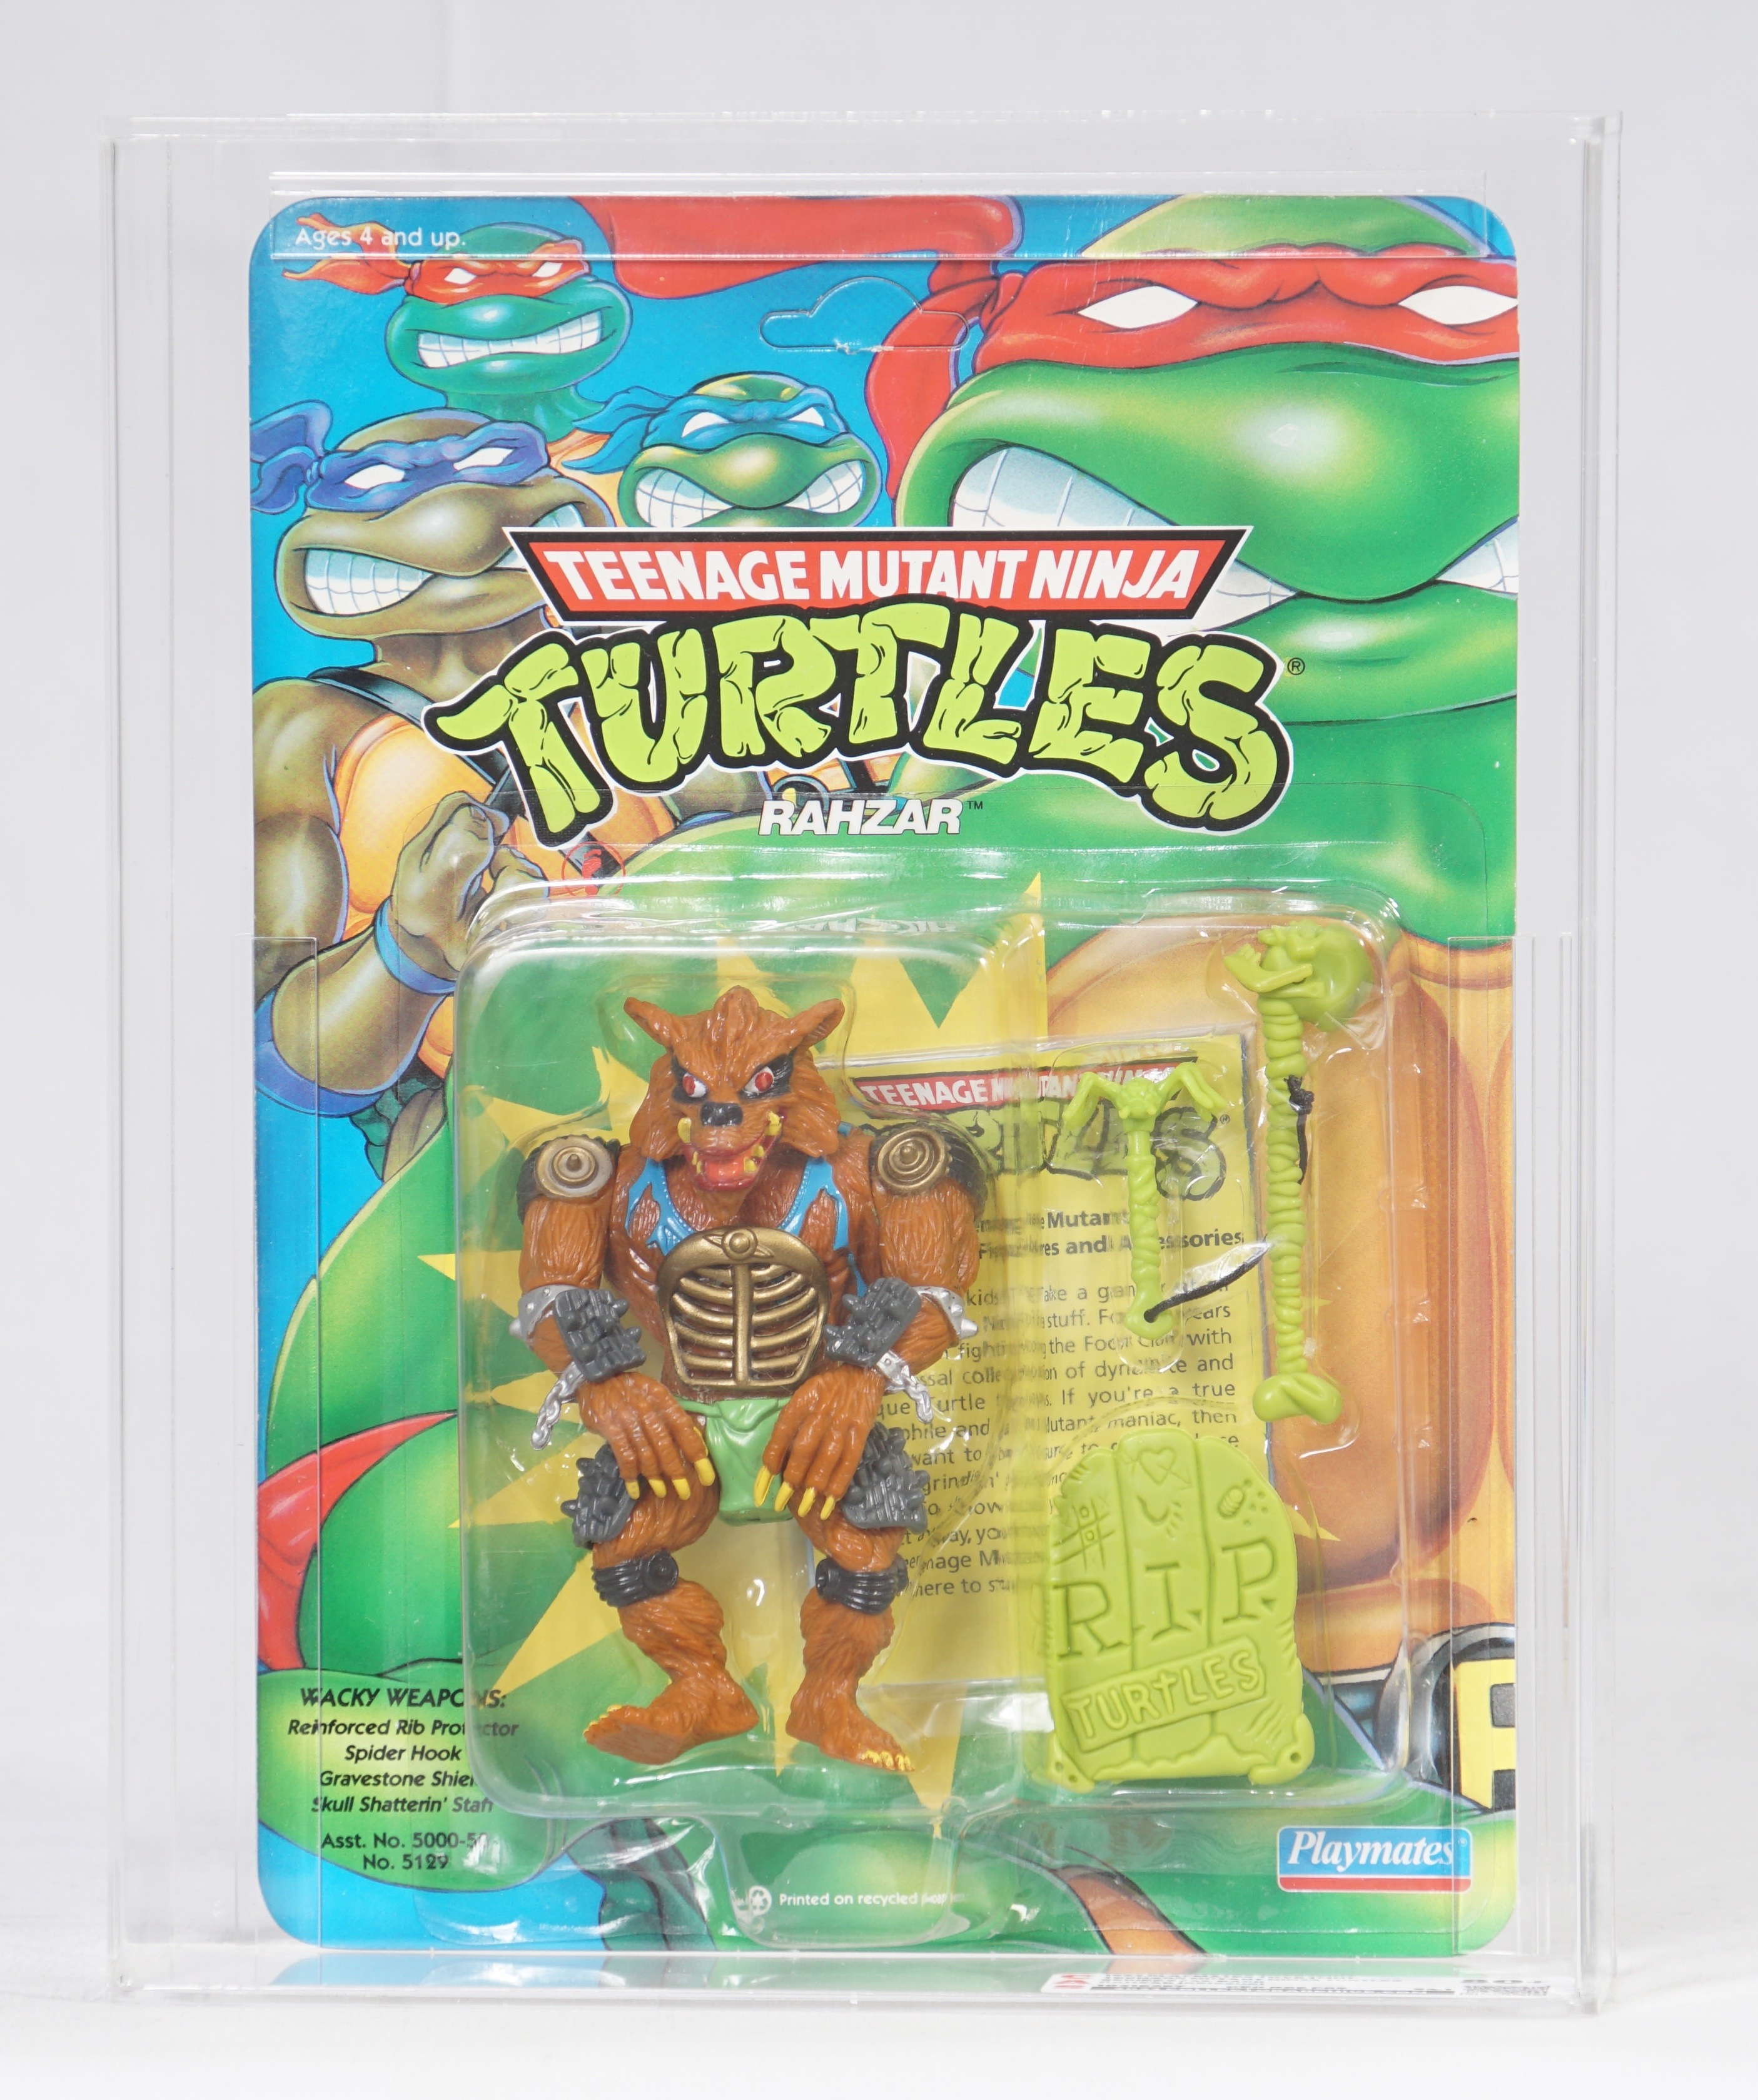 1992 Playmates Teenage Mutant Ninja Turtles Carded Action Figure - Rahzar  (Reissue)